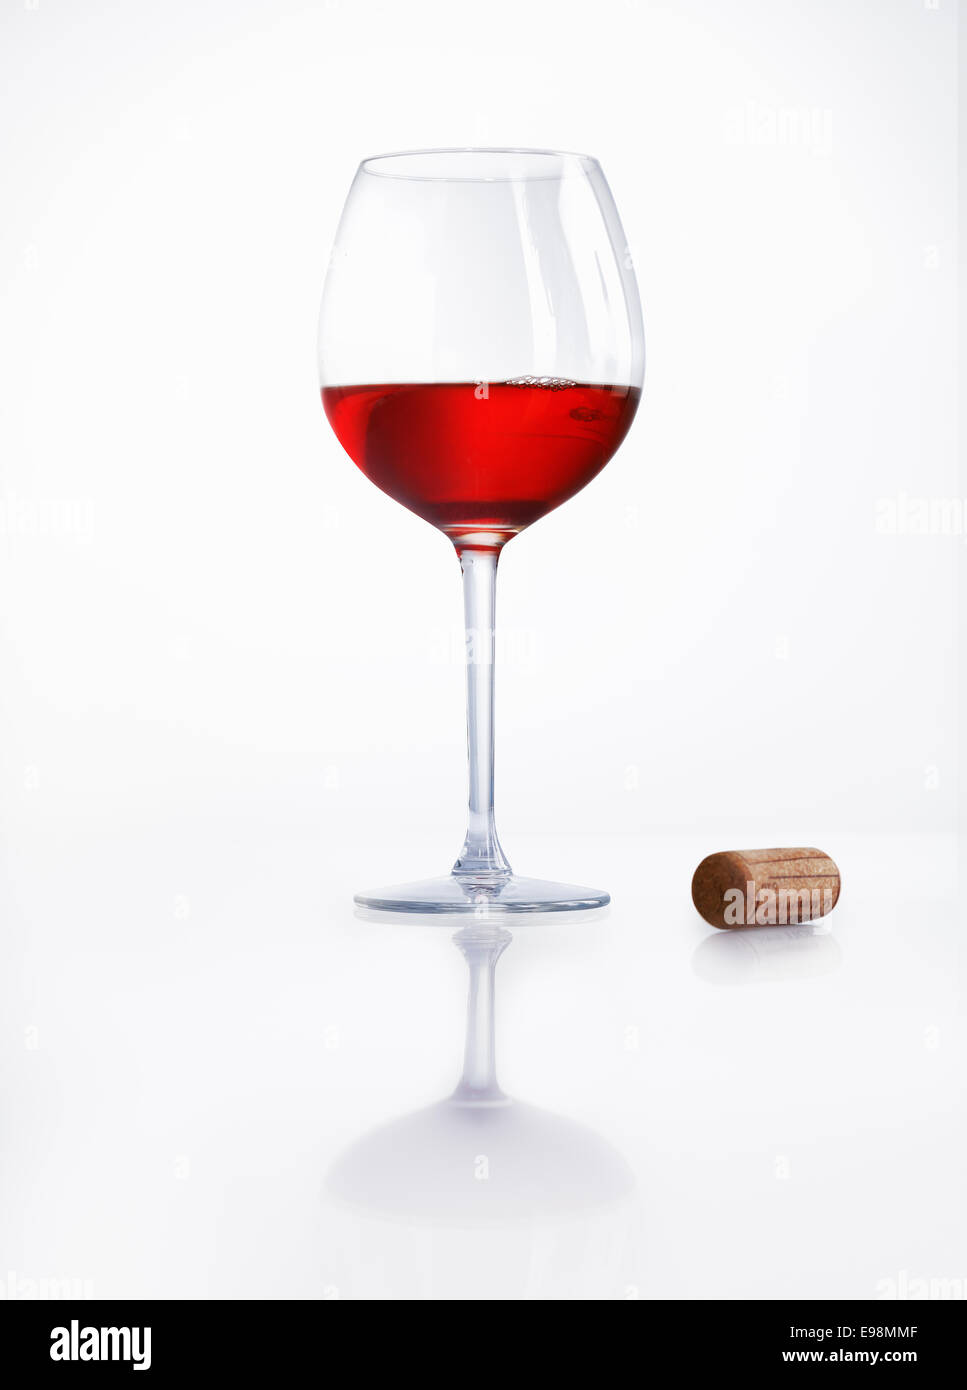 Bicchiere mezzo pieno di vino rosso su una superficie bianca riflettente con un tappo di sughero a fianco a una festa o a una celebrazione Foto Stock